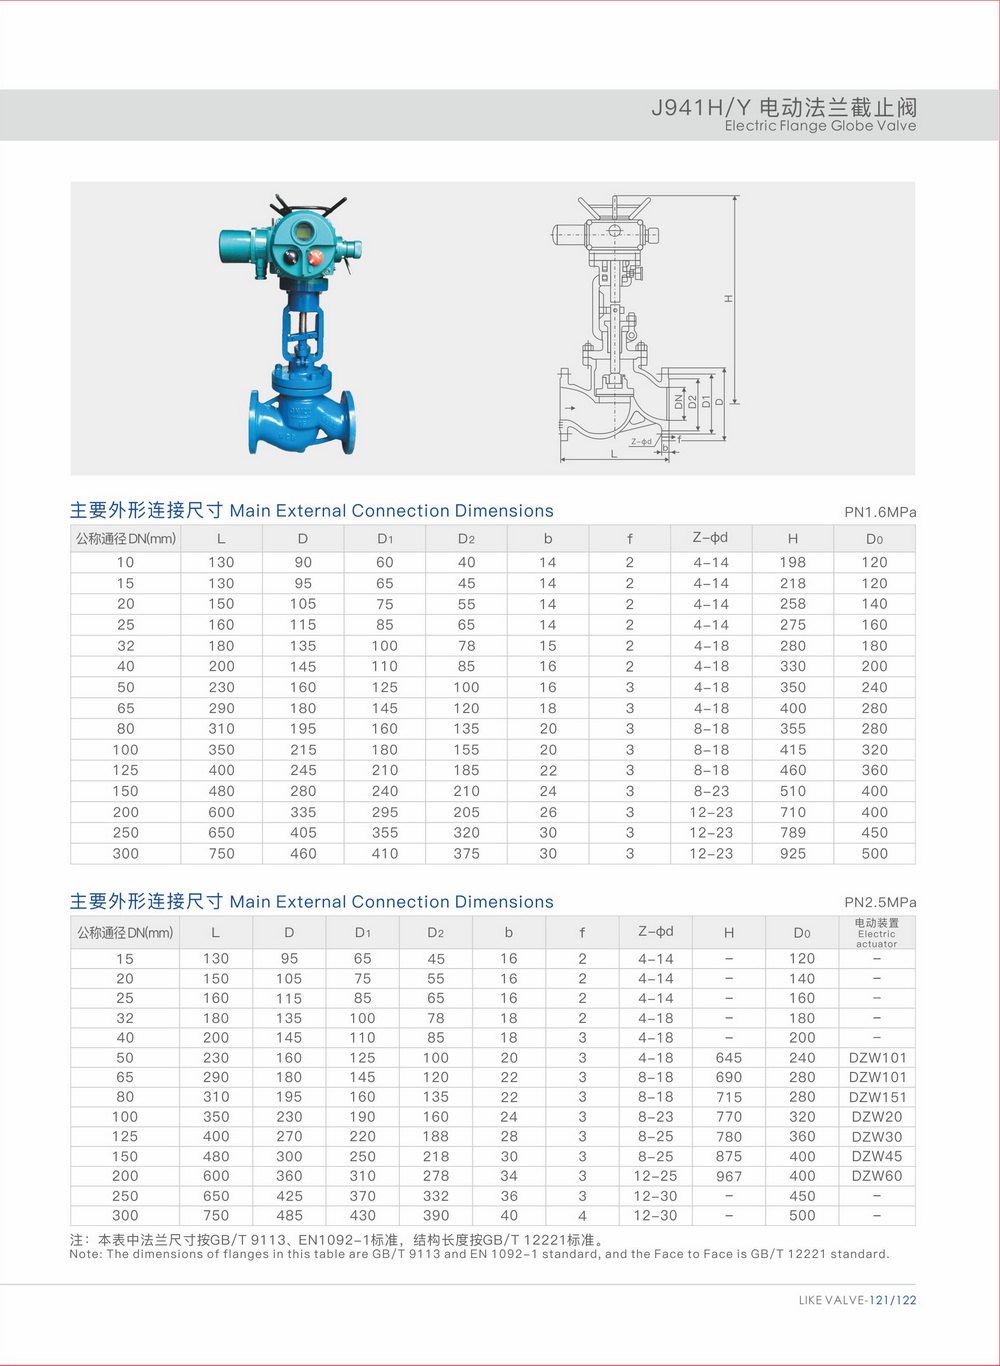 Electric flange globe valve, manufacturer of electric flange globe valves in China